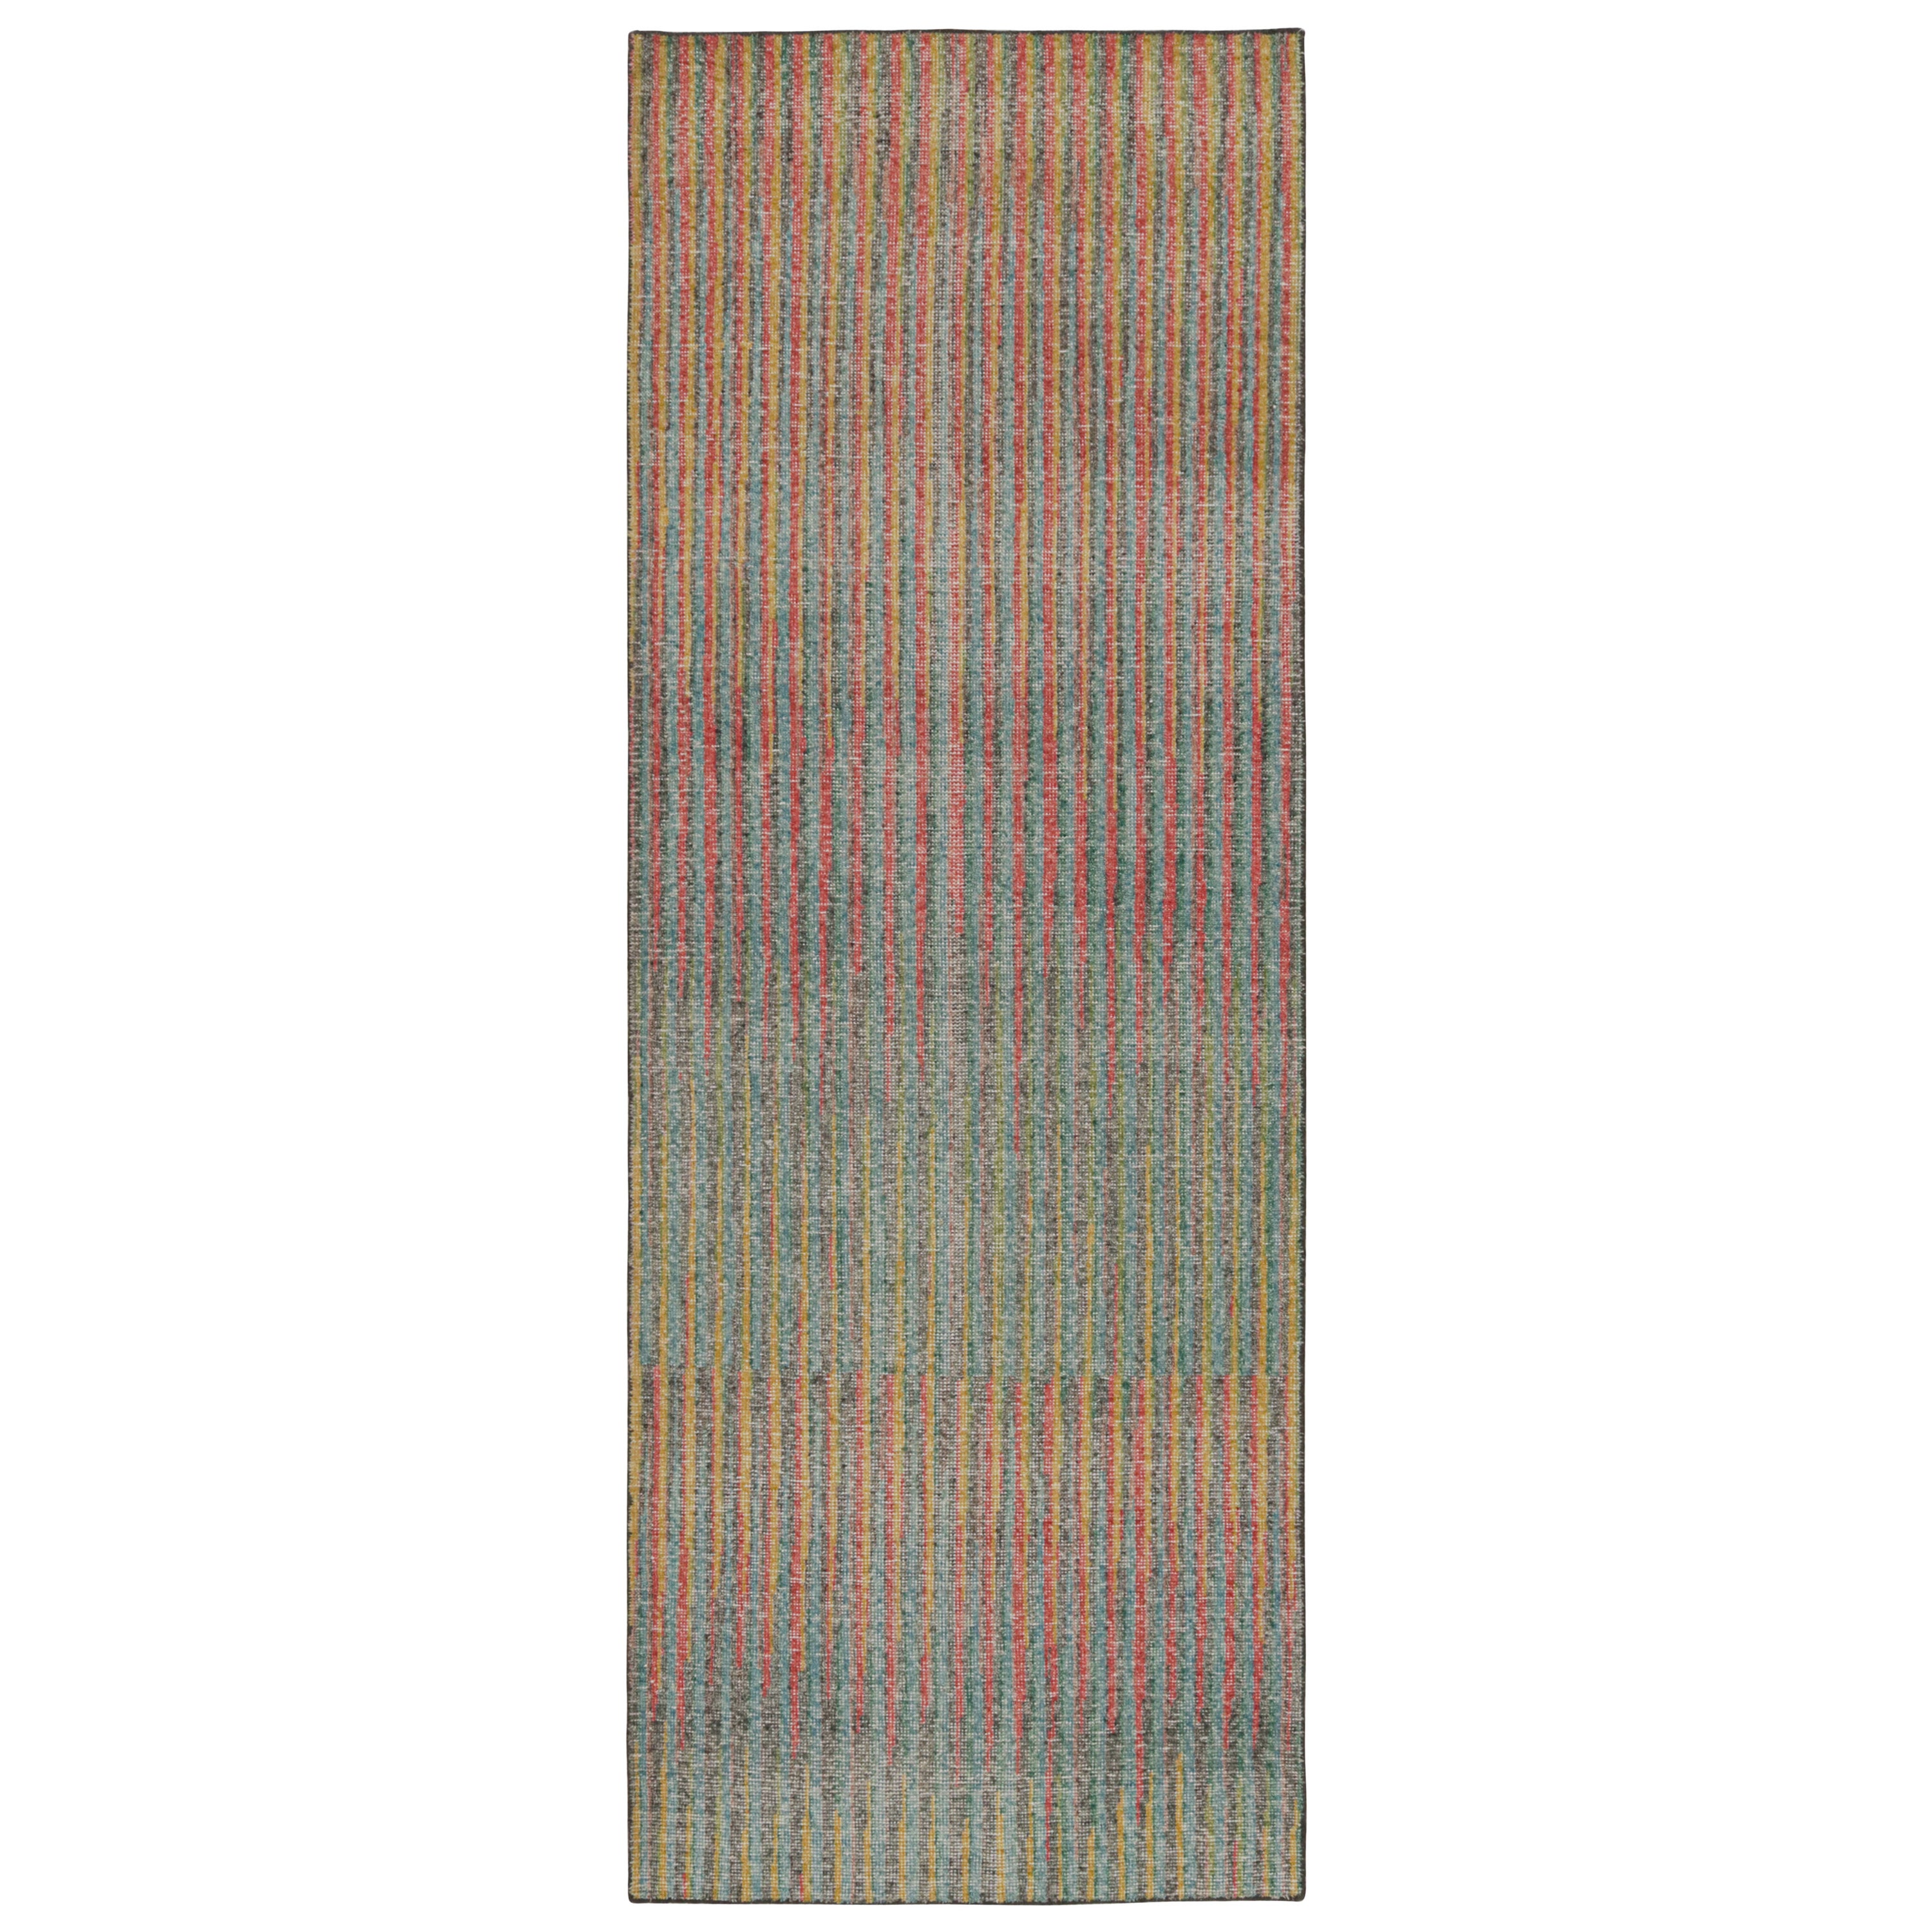 Rug & Kilim's Contemporary Abstract Runner Rug mit polychromen Streifen